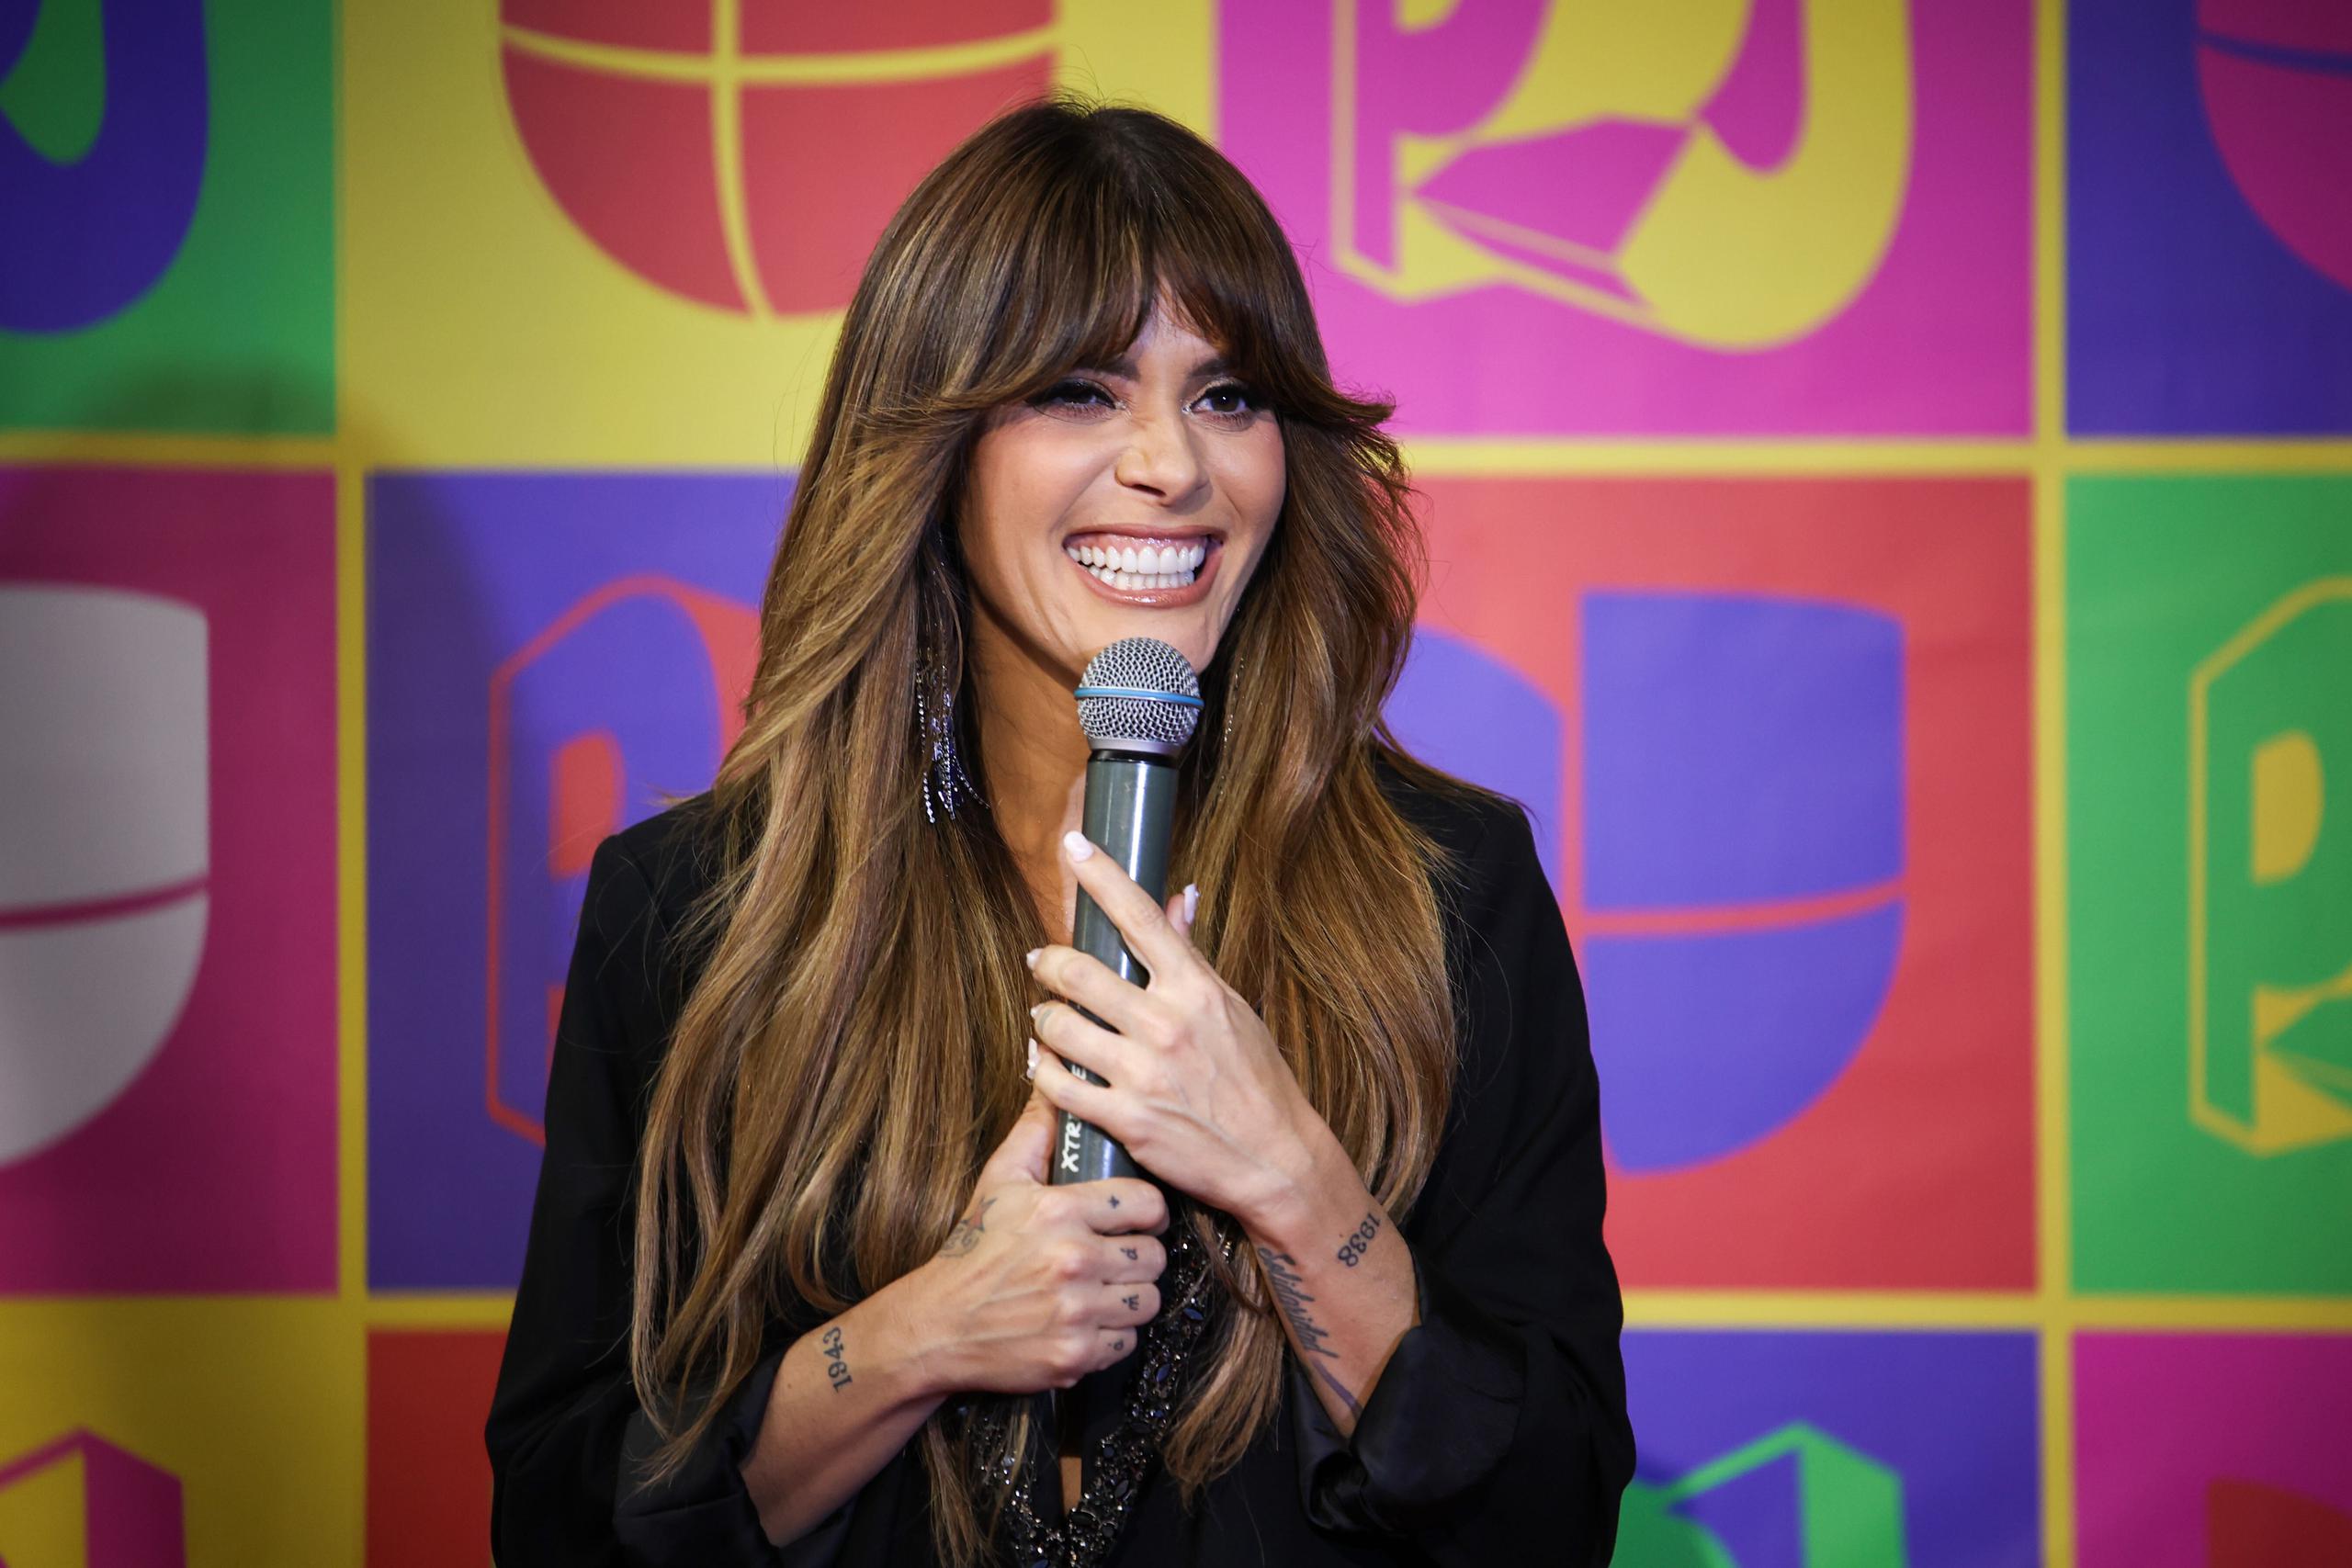 La cantautora Kany García ofreció su discurso luego de recibir el premio de "Agentes de Cambio" en Premios Juventud.